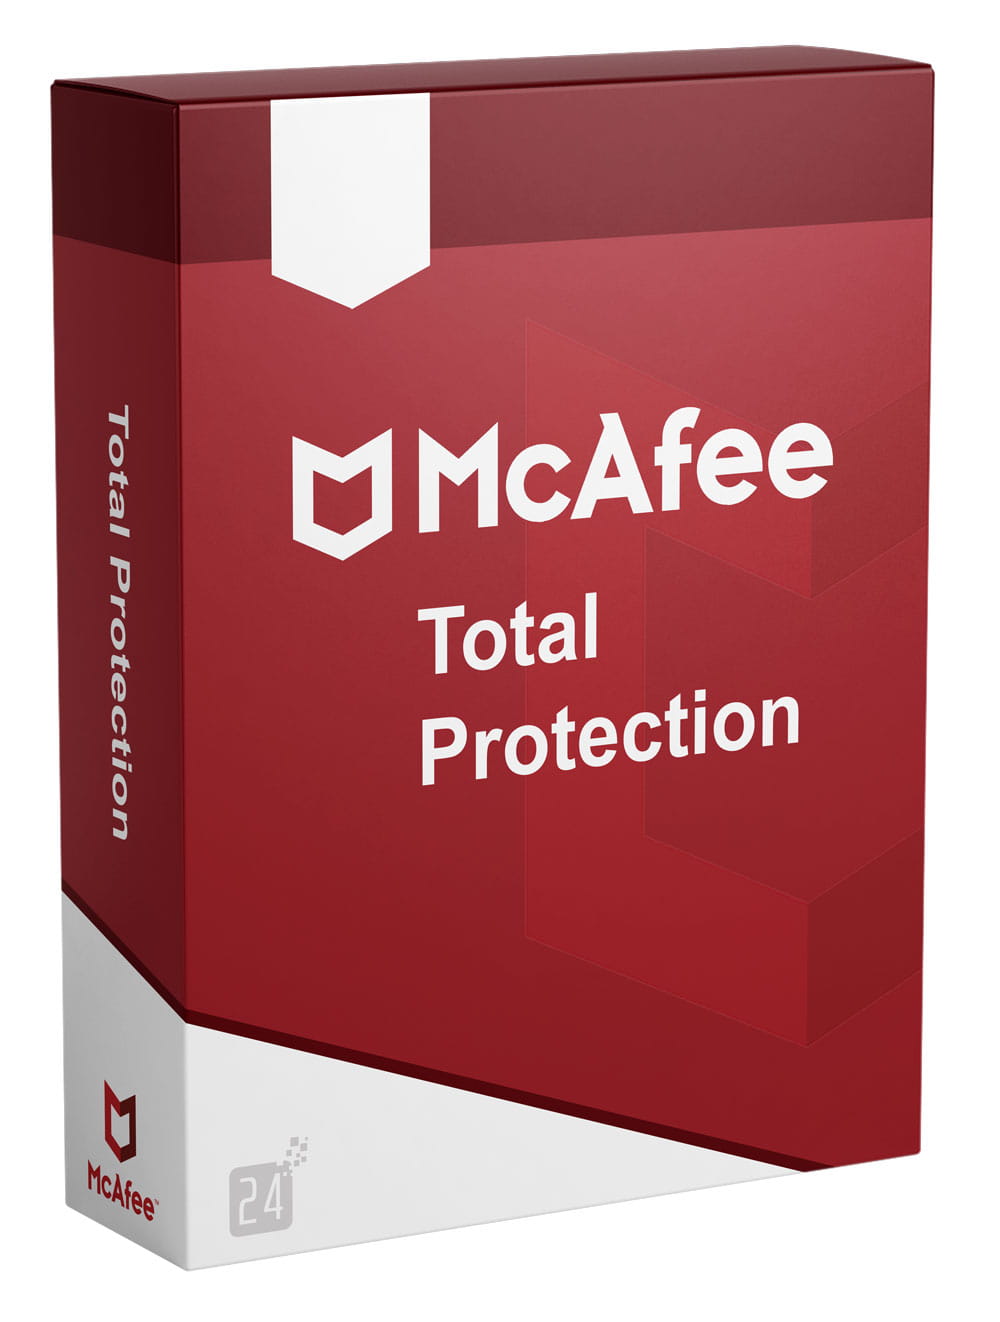 McAfee Protecção Total